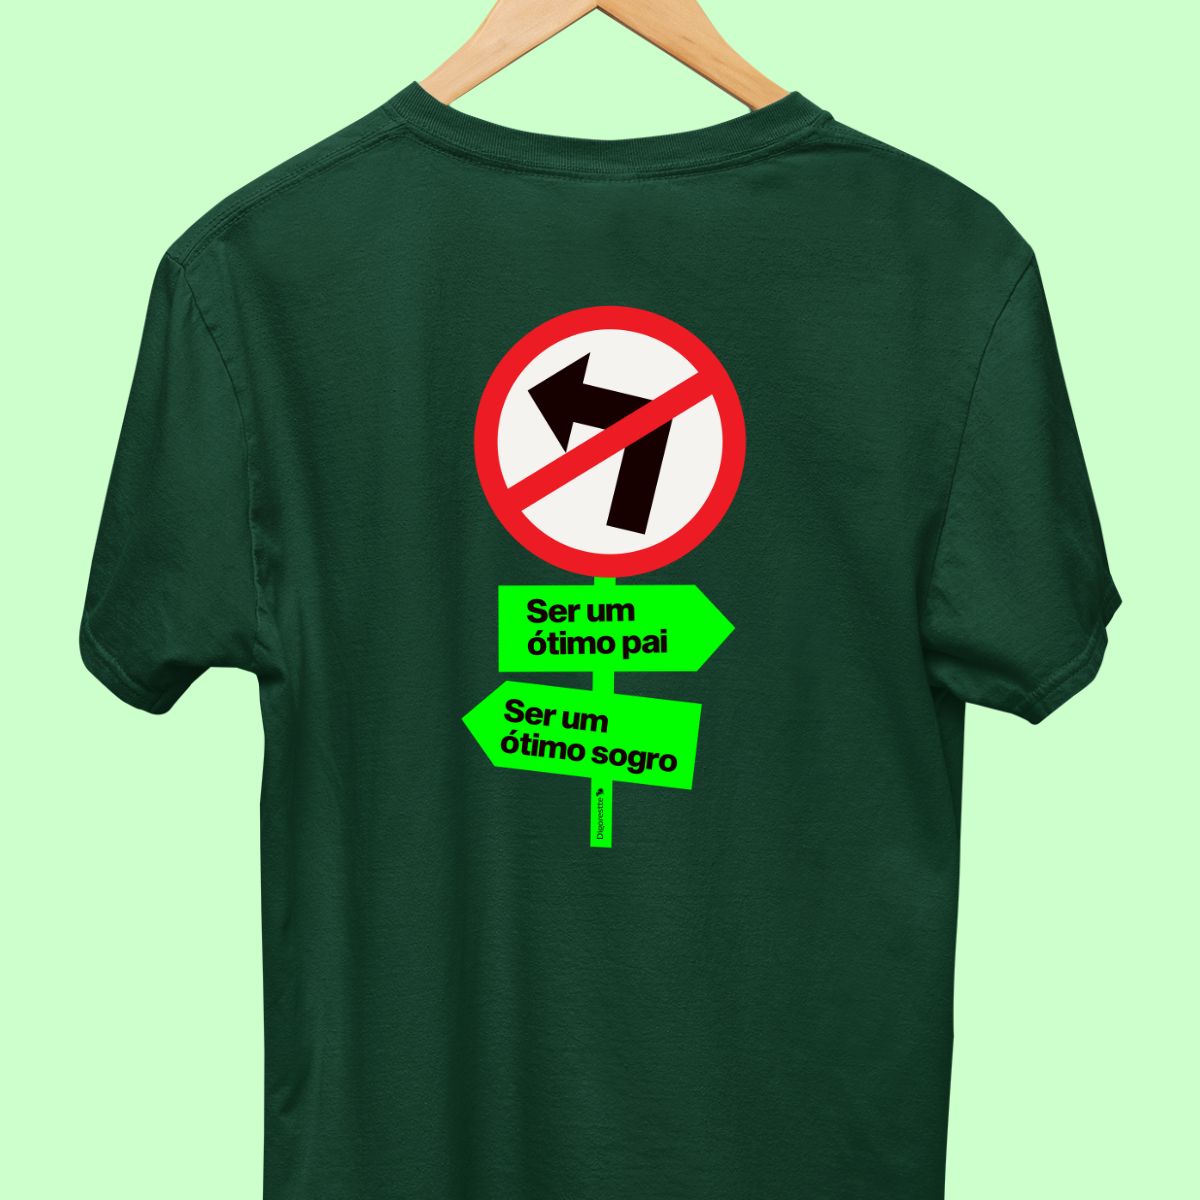 Camiseta com uma placa de trânsito de proíbido ir a esquerda, uma placa escrito "Ser um ótimo sogro" para esquerda, e uma placa escrito "ser um ótimo pai" para direita" masculina verde.